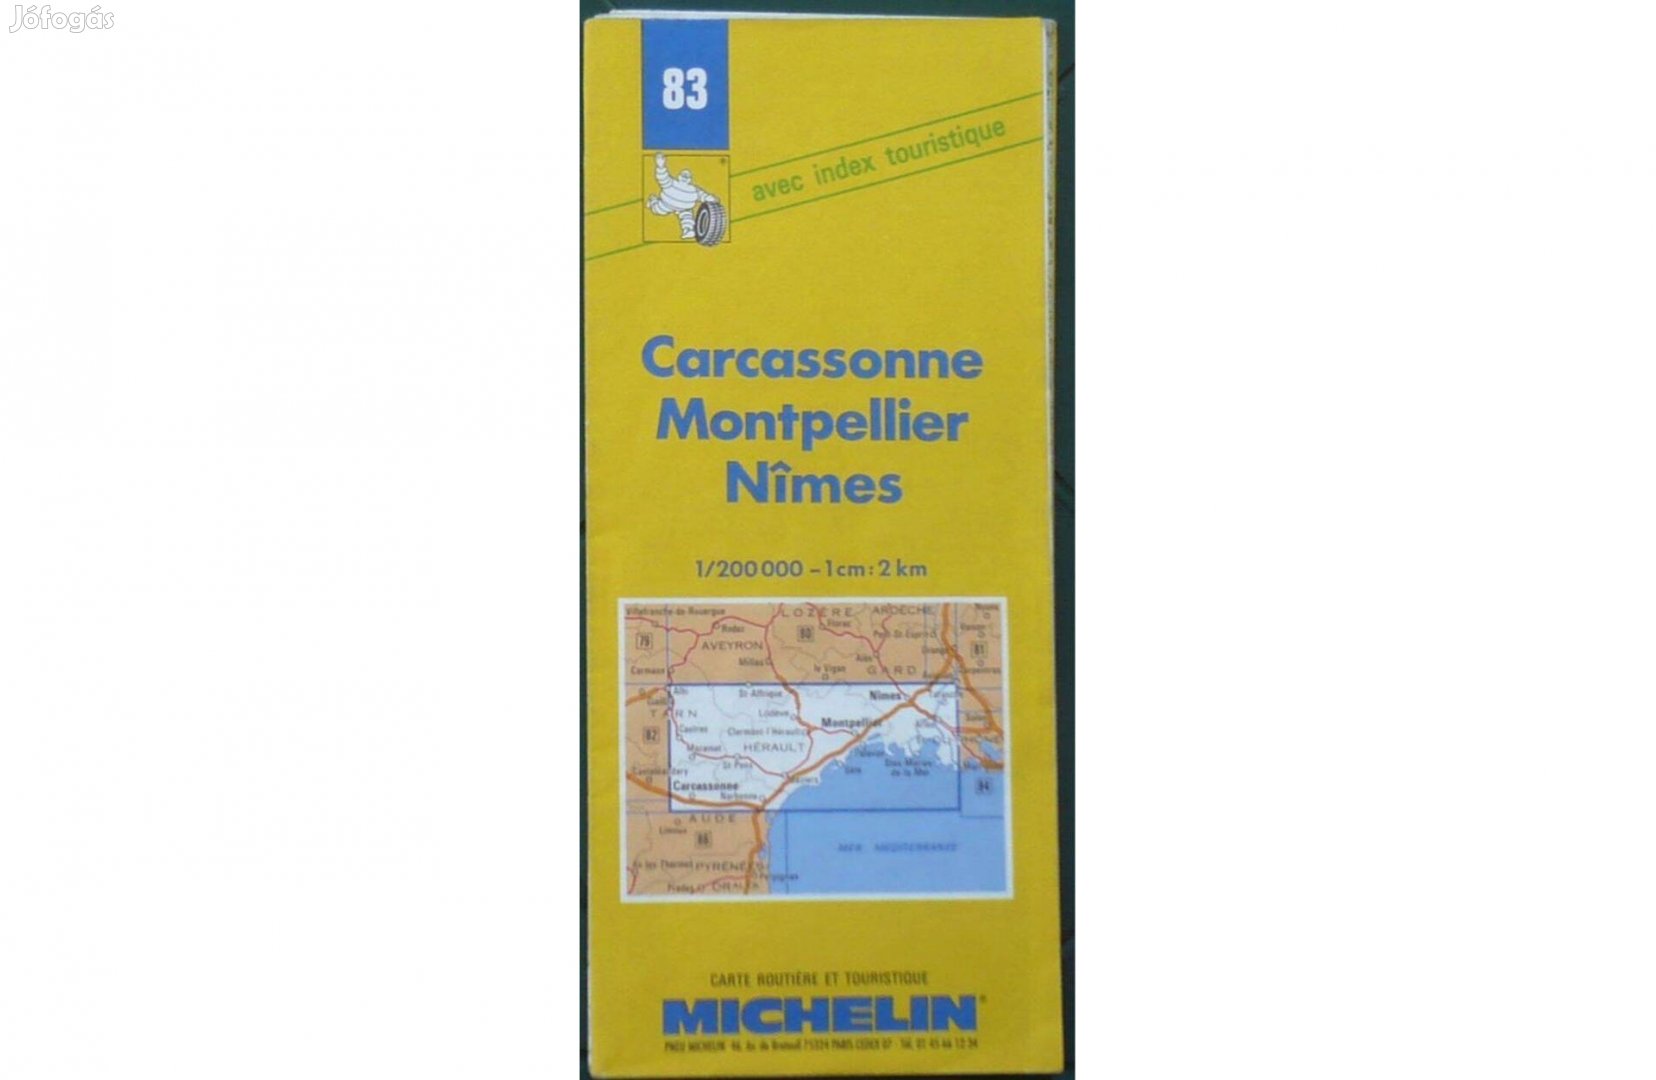 Franciaország Michelin 83. térkép Carcassonne-Montpellier-Nimes